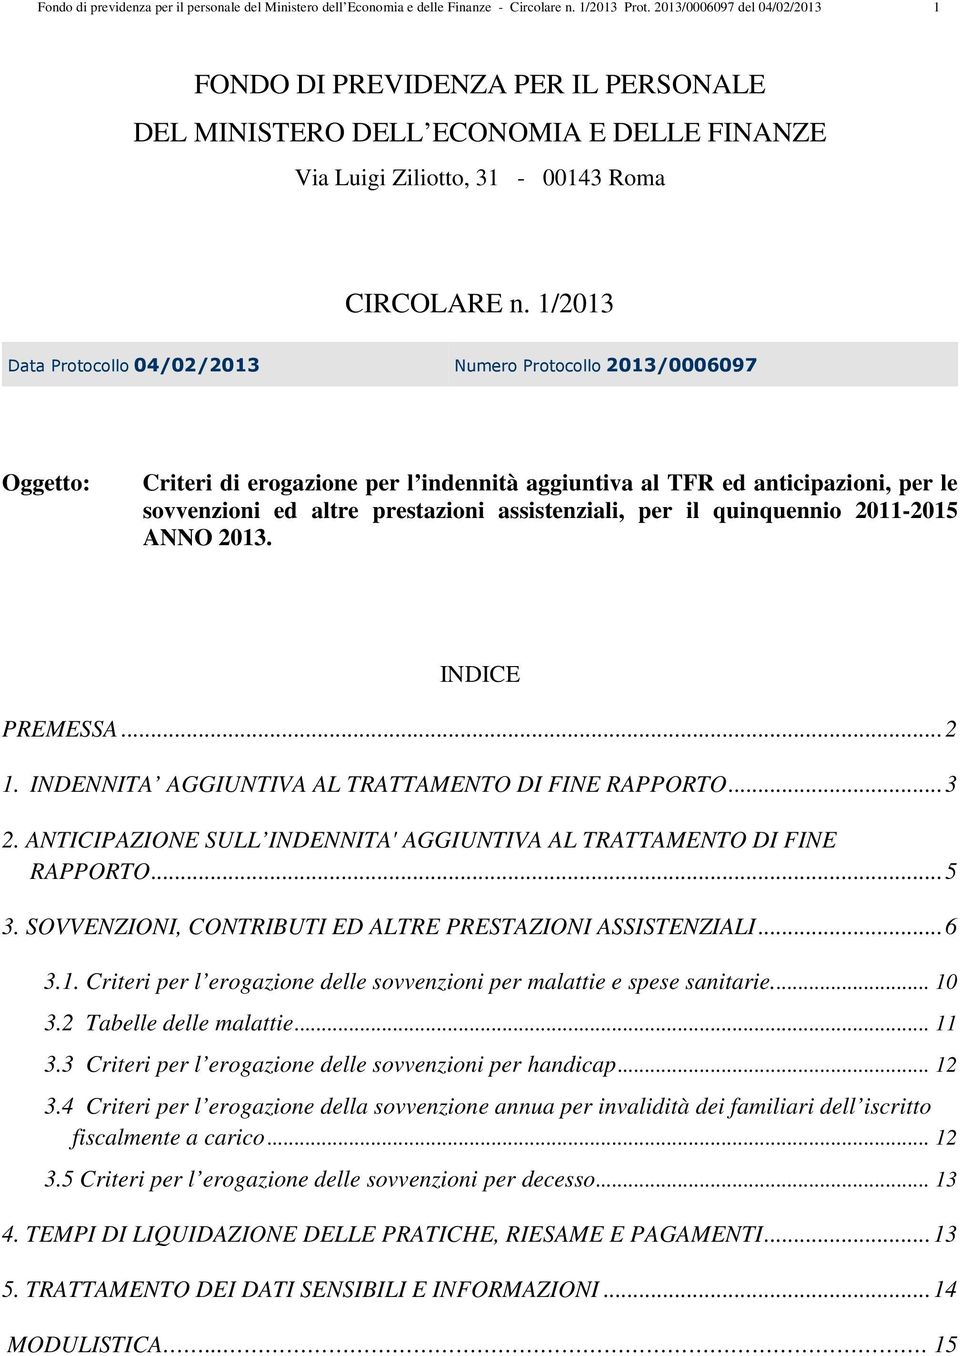 1/2013 Dt Protocollo 04/02/2013 Numero Protocollo 2013/0006097 Oggetto: Criteri di erogzione per l indennità ggiuntiv l TFR ed nticipzioni, per le sovvenzioni ed ltre prestzioni ssistenzili, per il